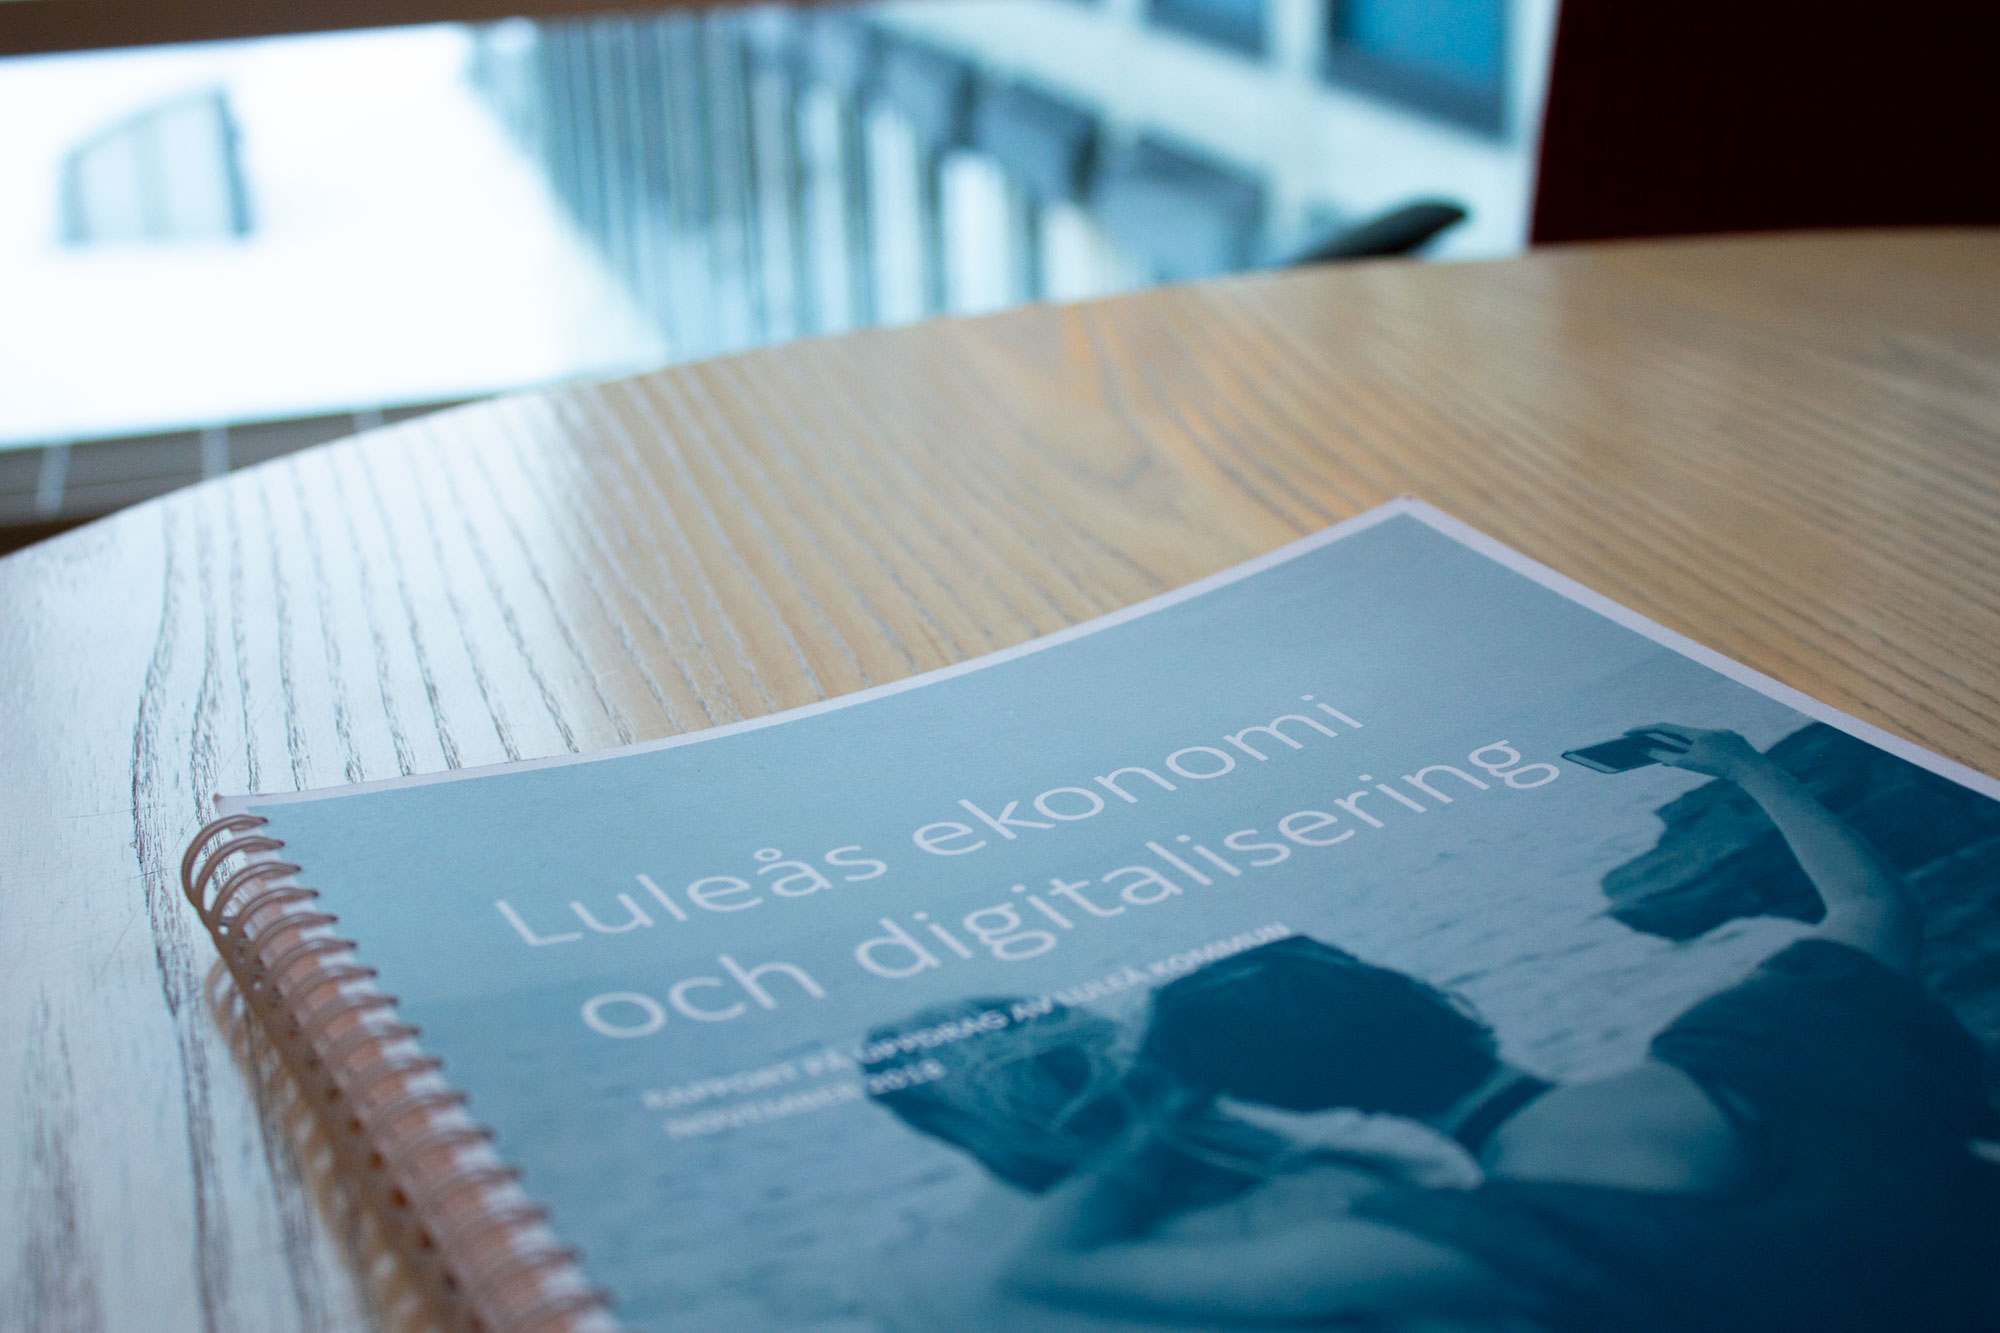 Framsida rapporten Luleås ekonomi och digitalisering